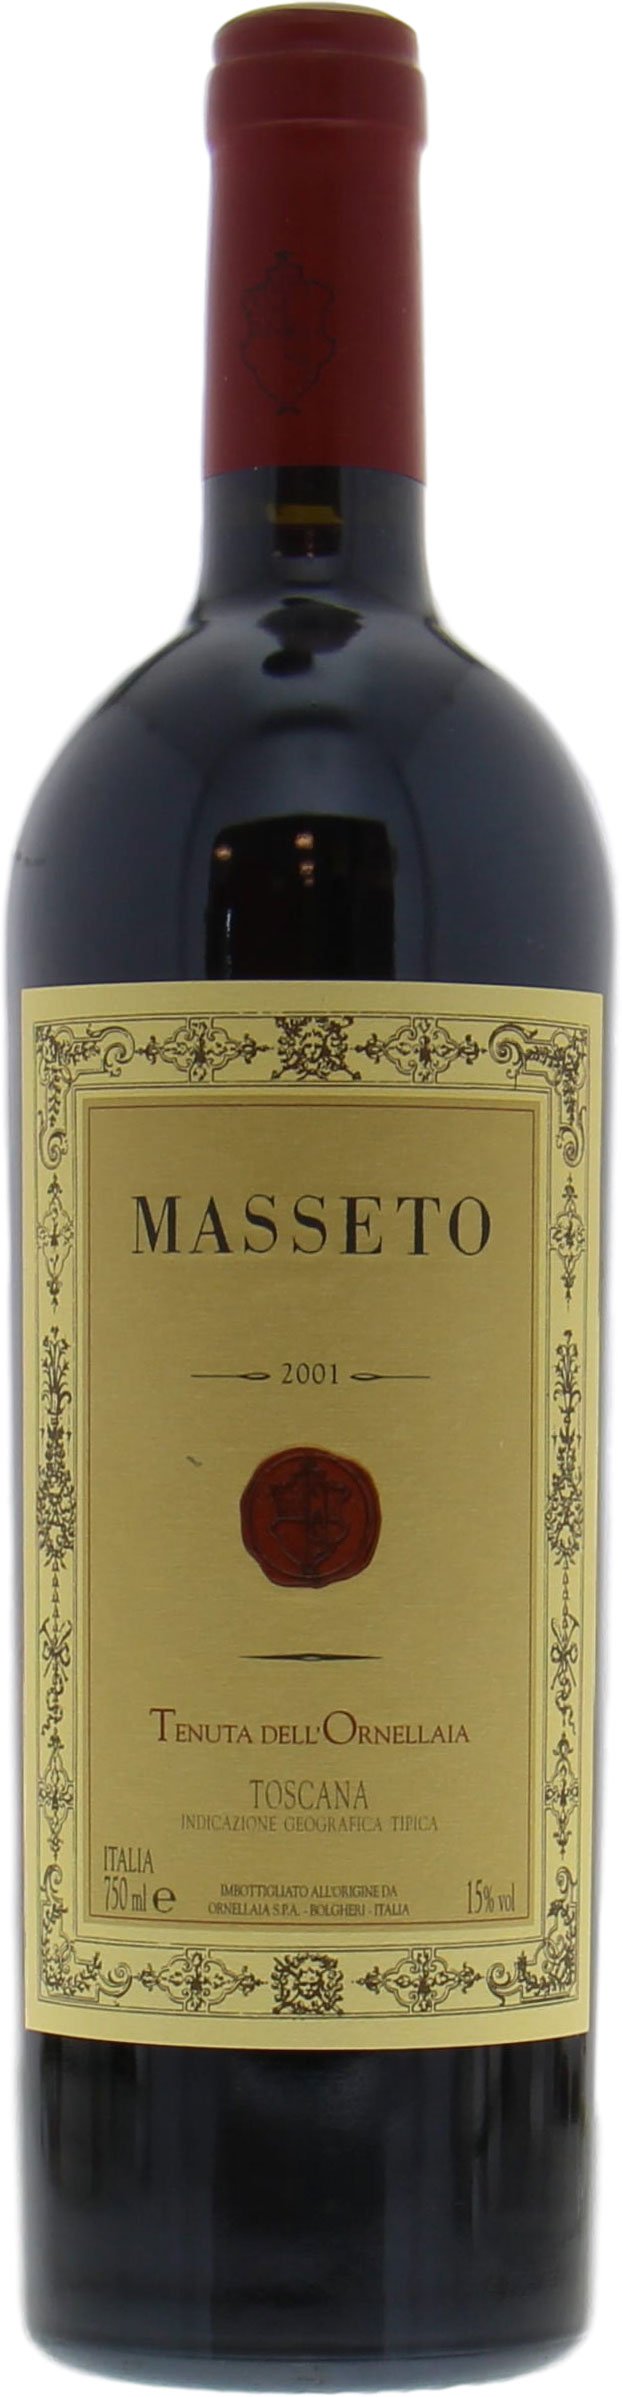 masseto wine for sale